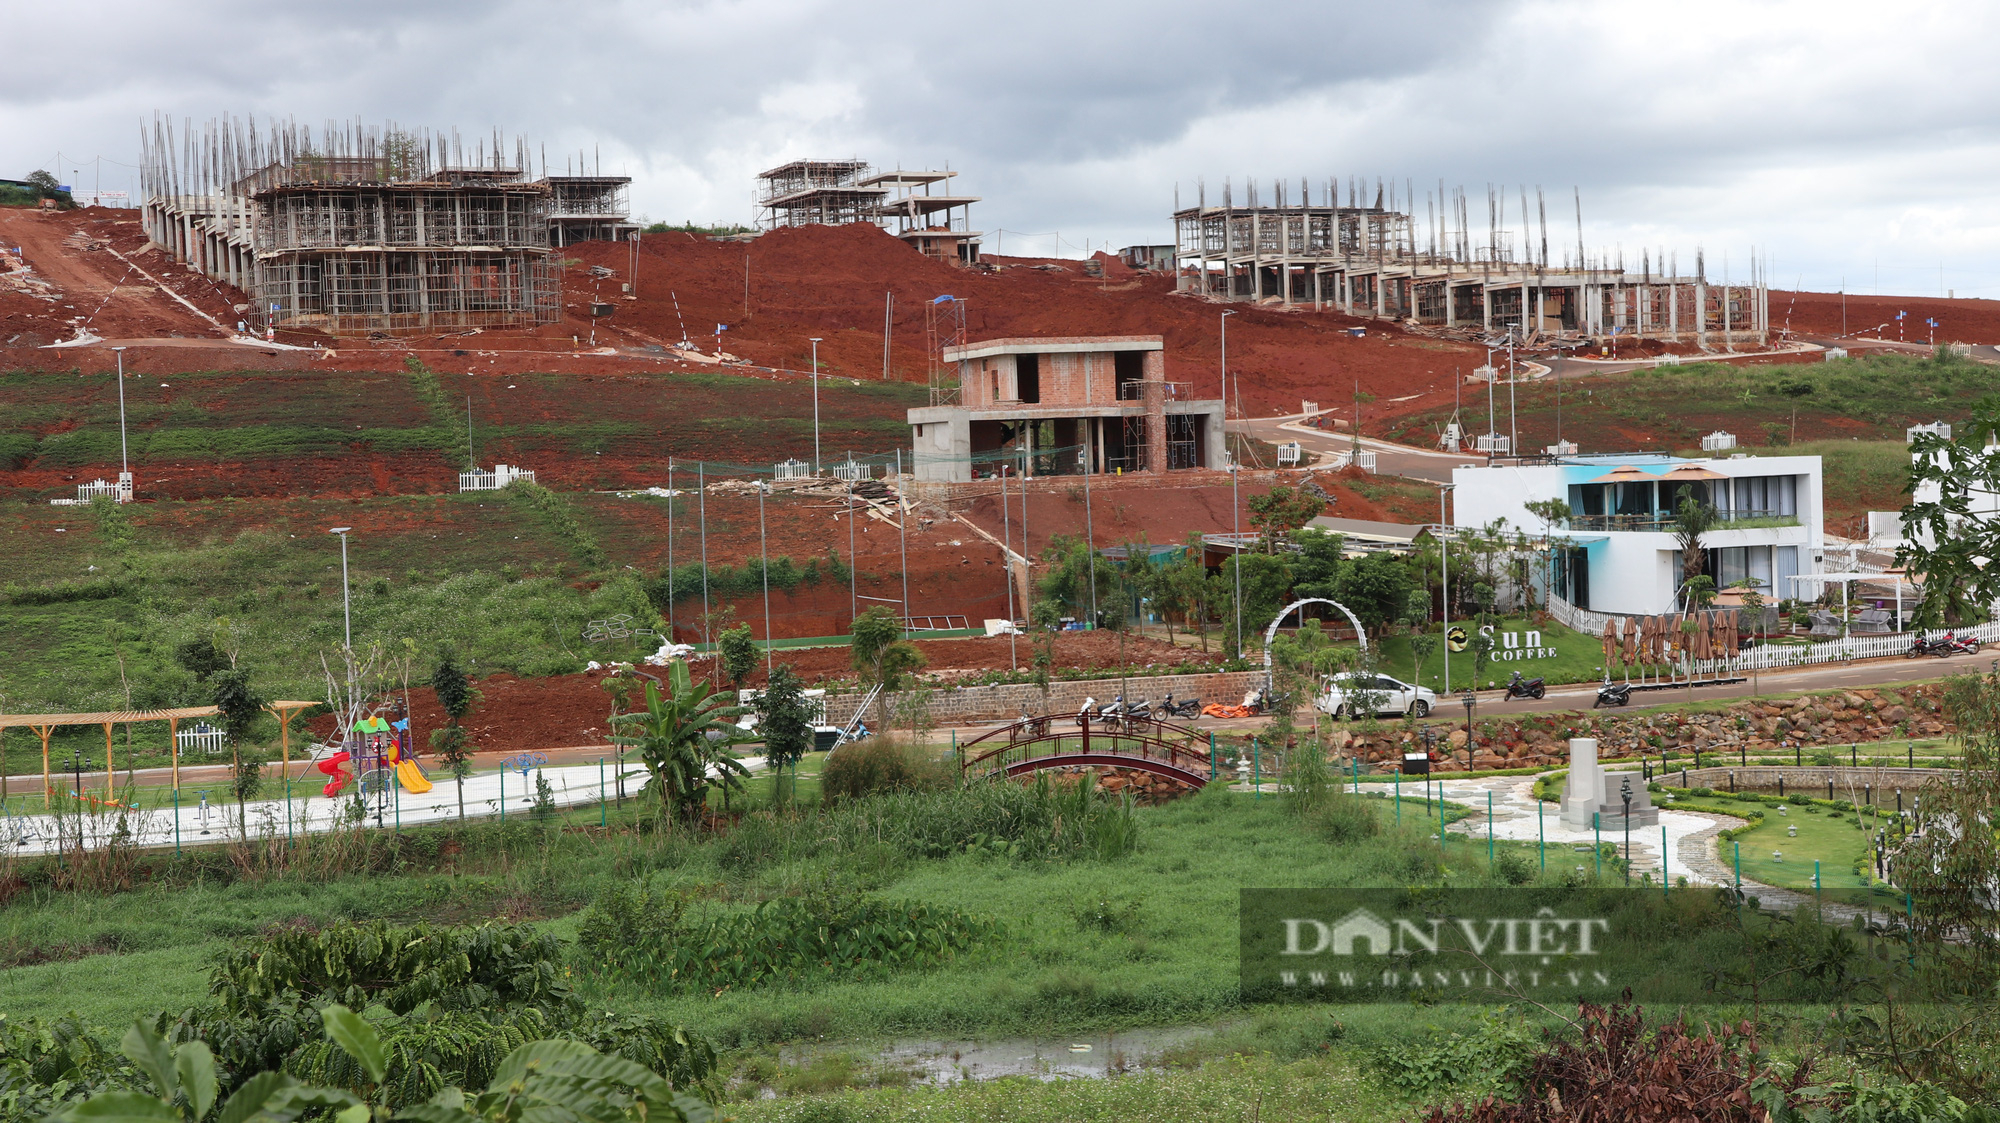 Huyện Bảo Lâm (Lâm Đồng): 77 gia đình hiến đất làm đường để tách mới gần 17.000 thửa đất - Ảnh 3.